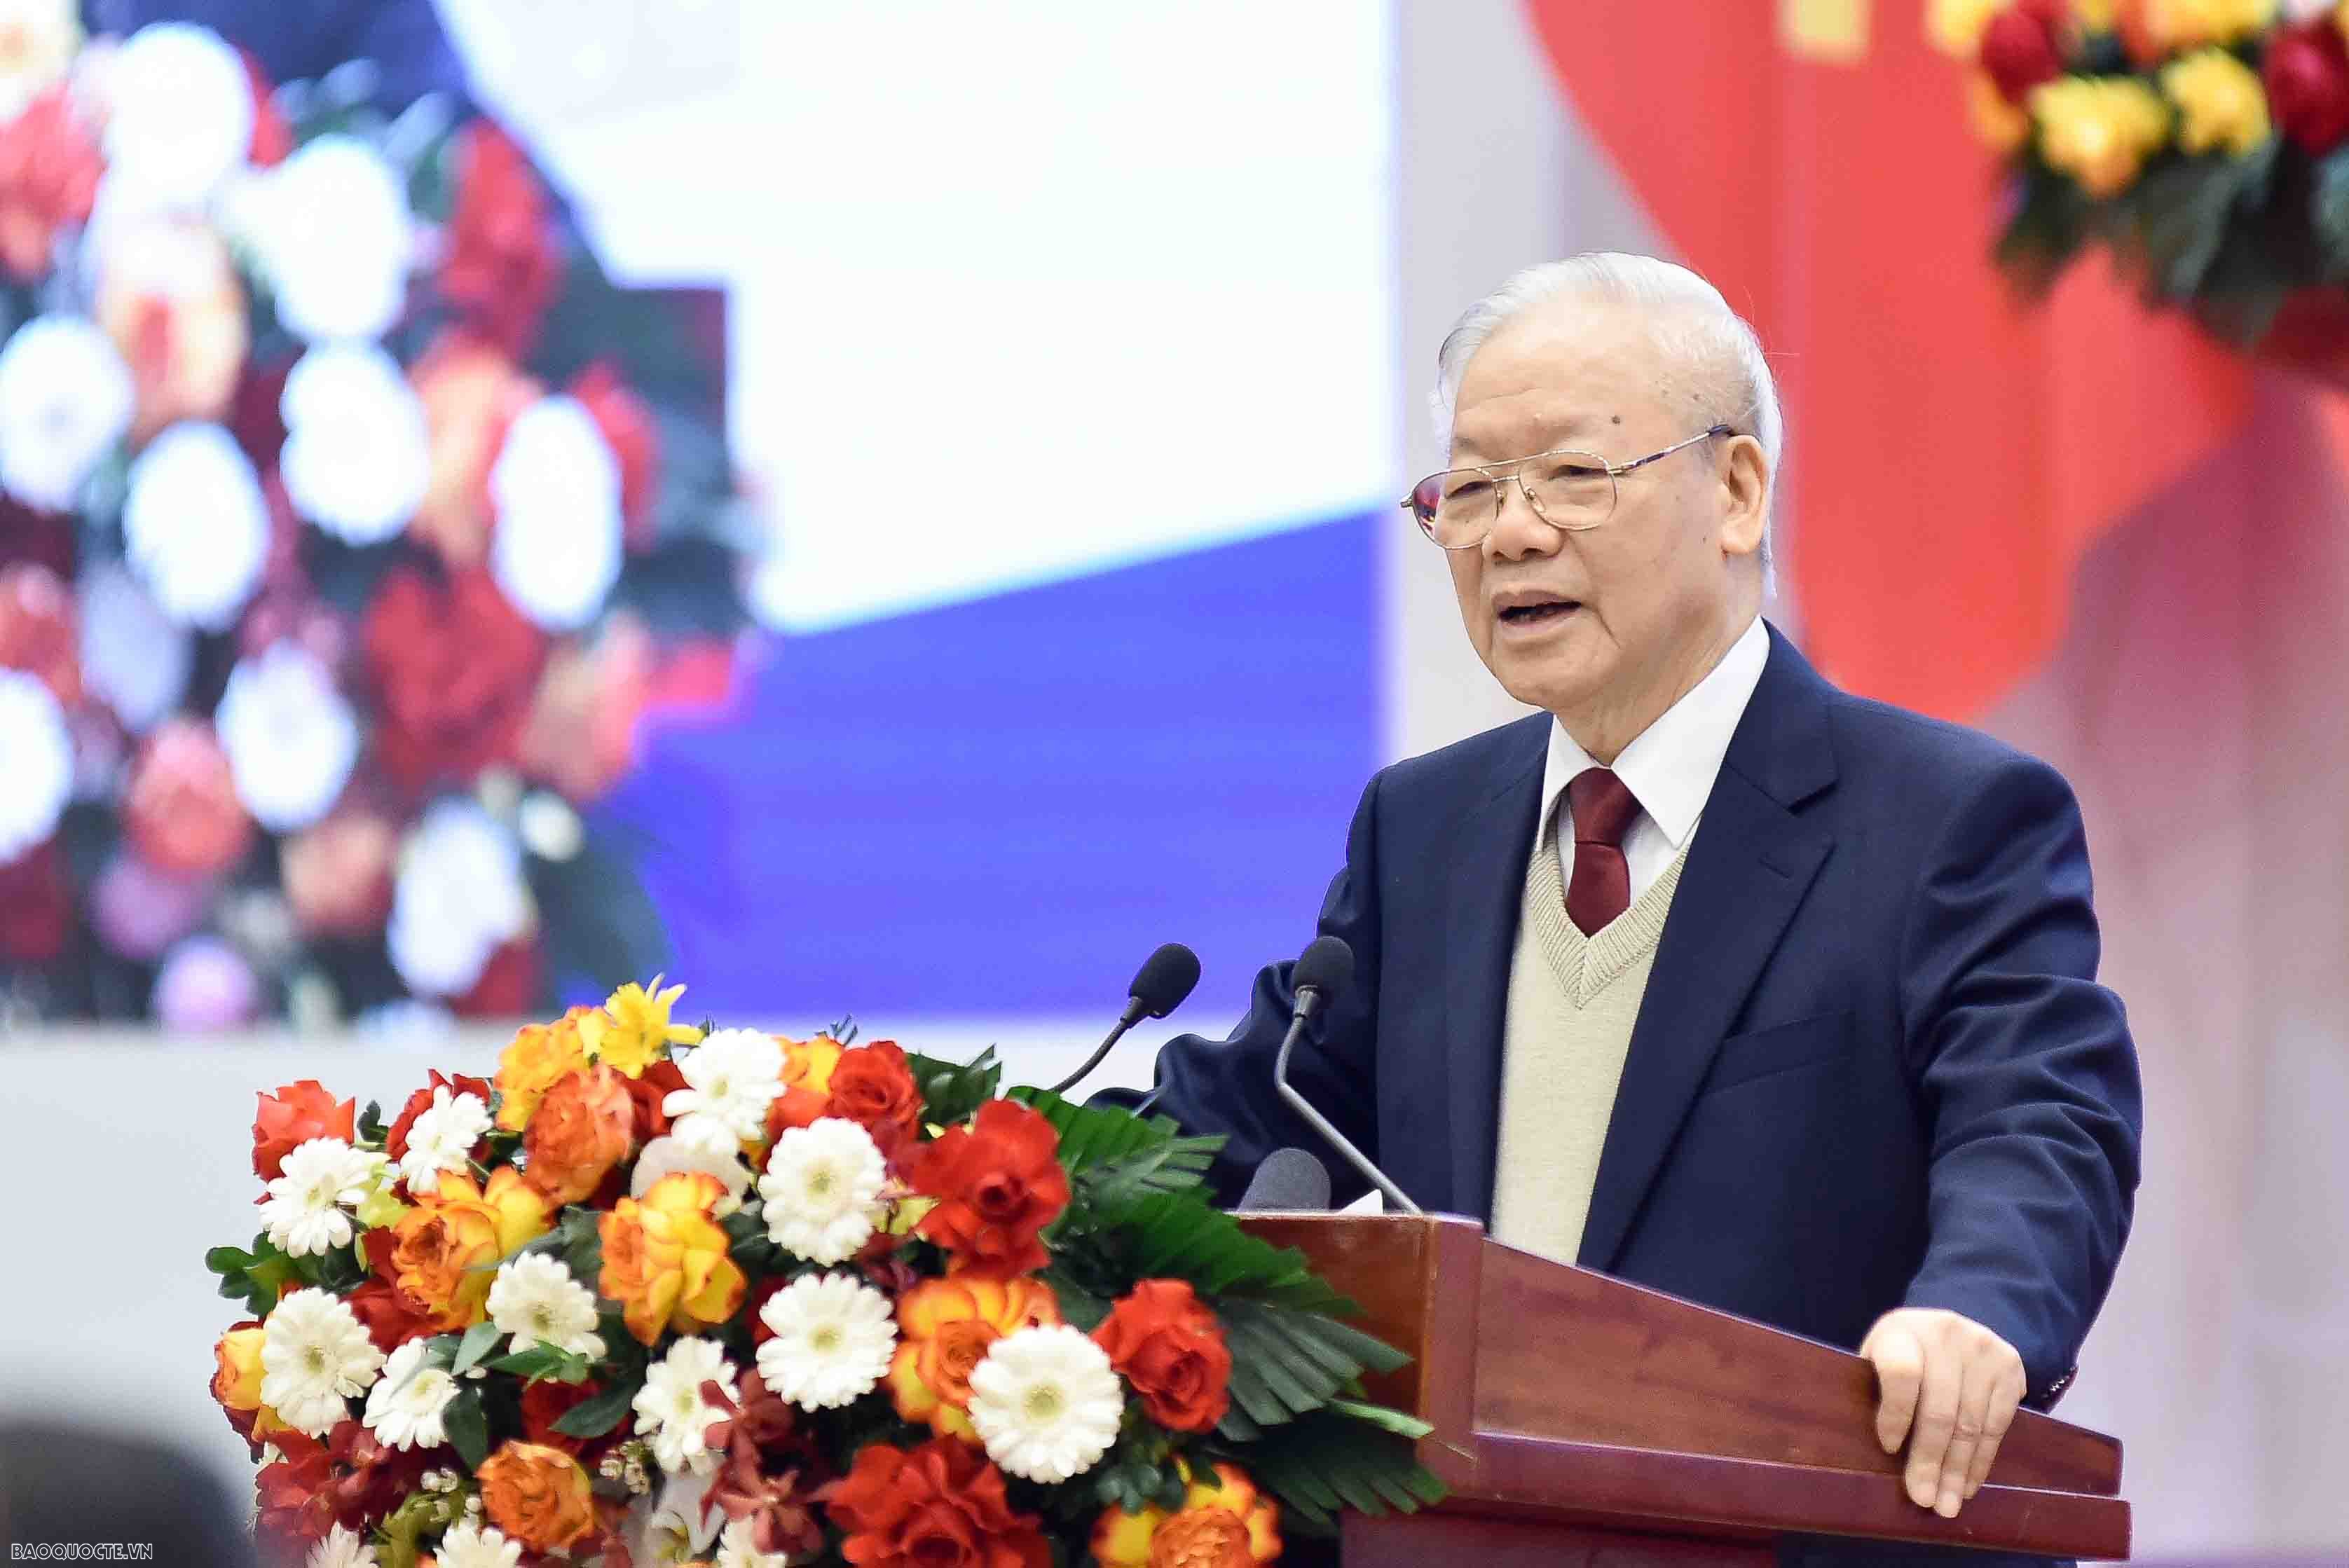 'Trái ngọt lành' của hành trình khẳng định Trường phái đối ngoại, ngoại giao 'cây tre Việt Nam'